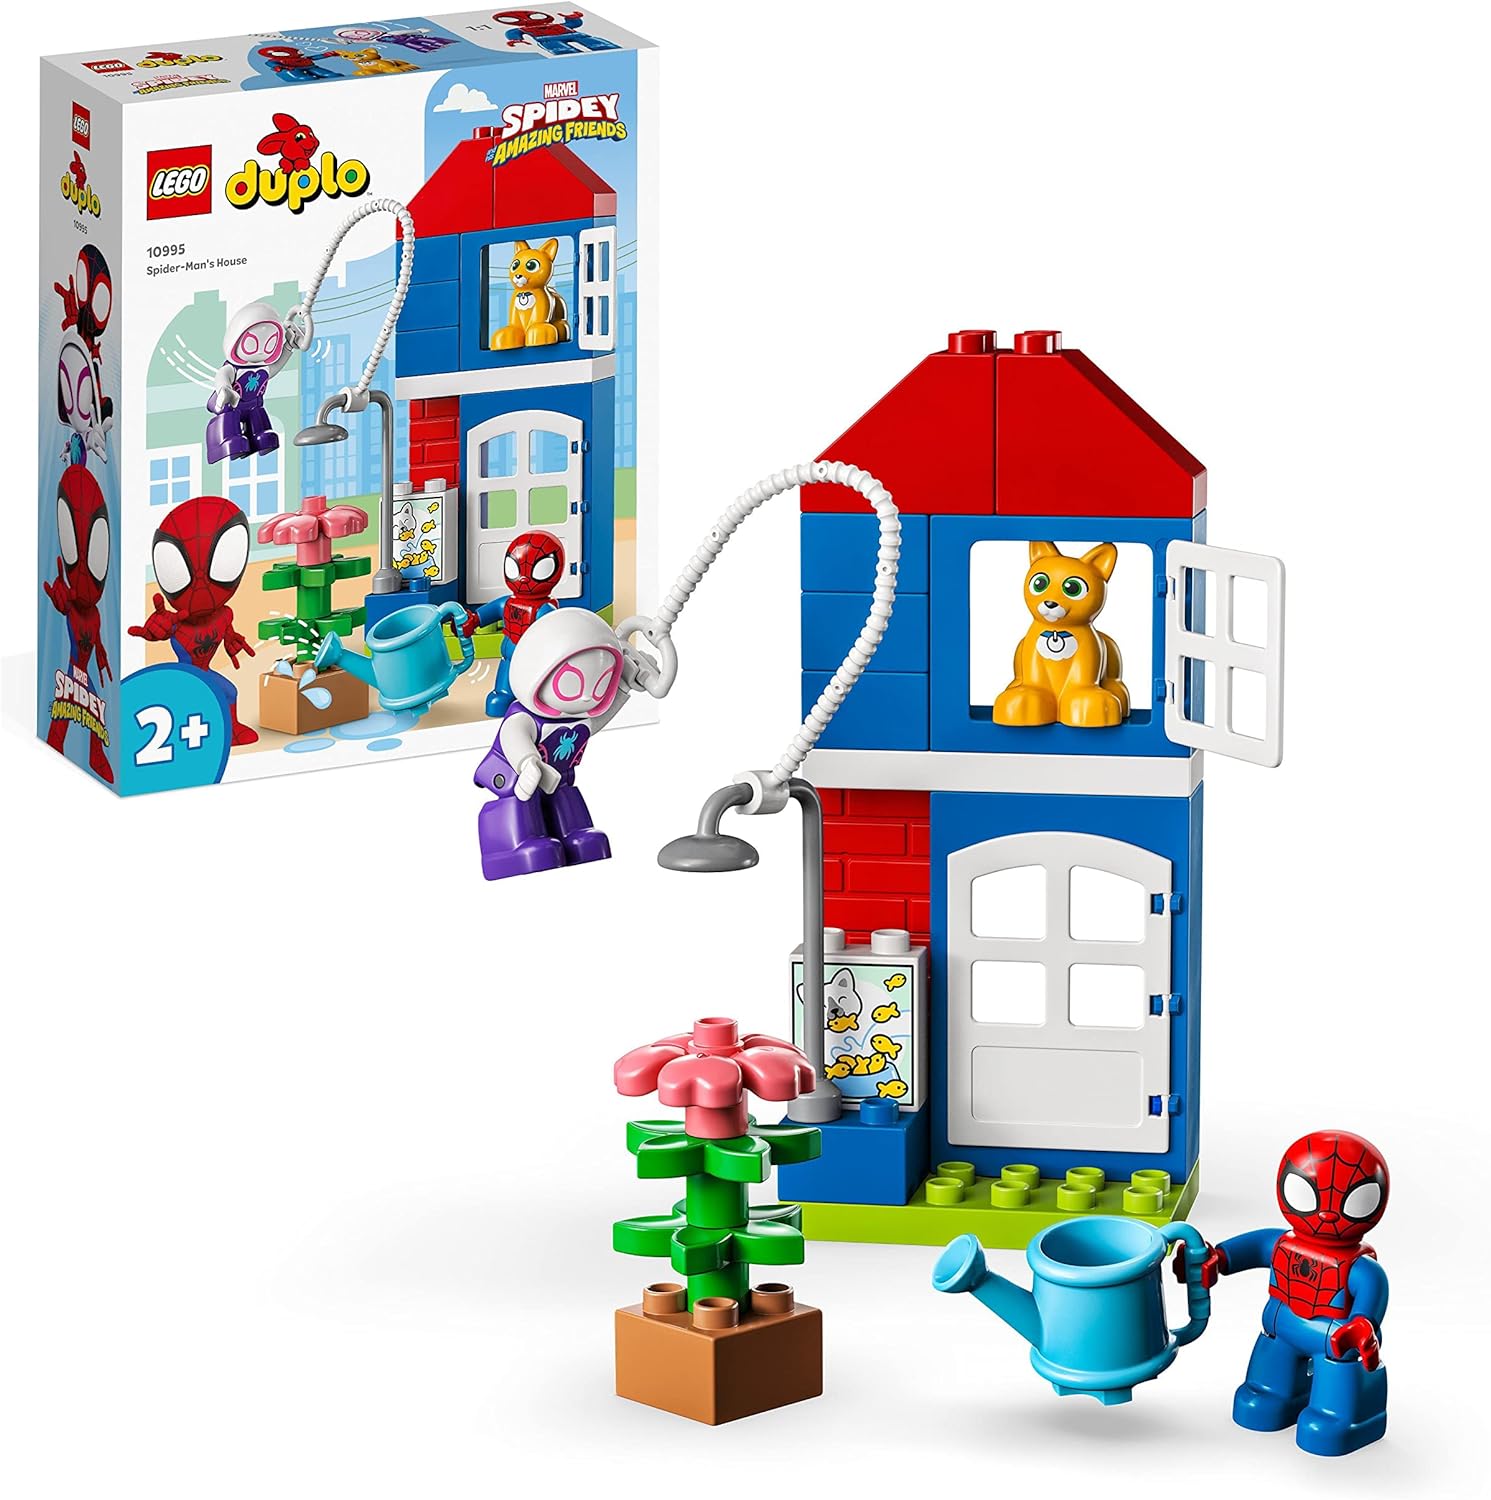 LEGO duplo-Set "Spider-Mans Haus (10995)" von LEGO DUPLO